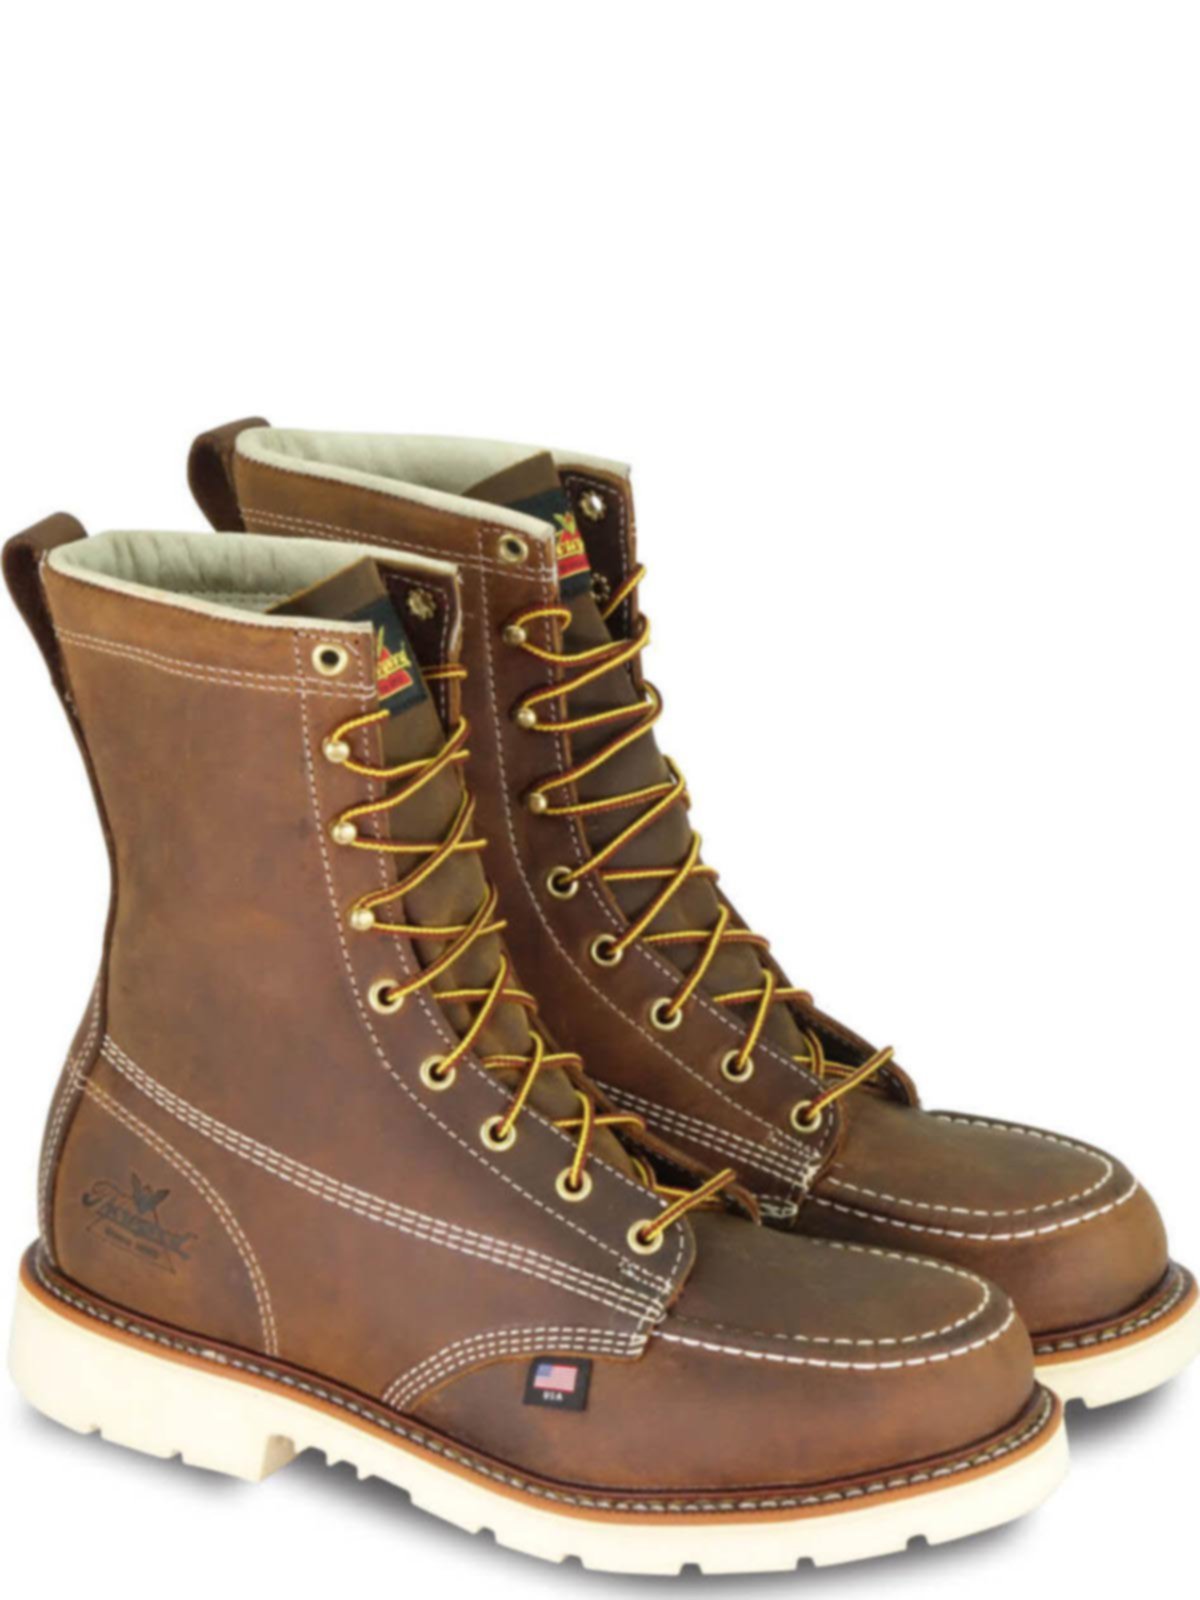 8 moc toe work boots